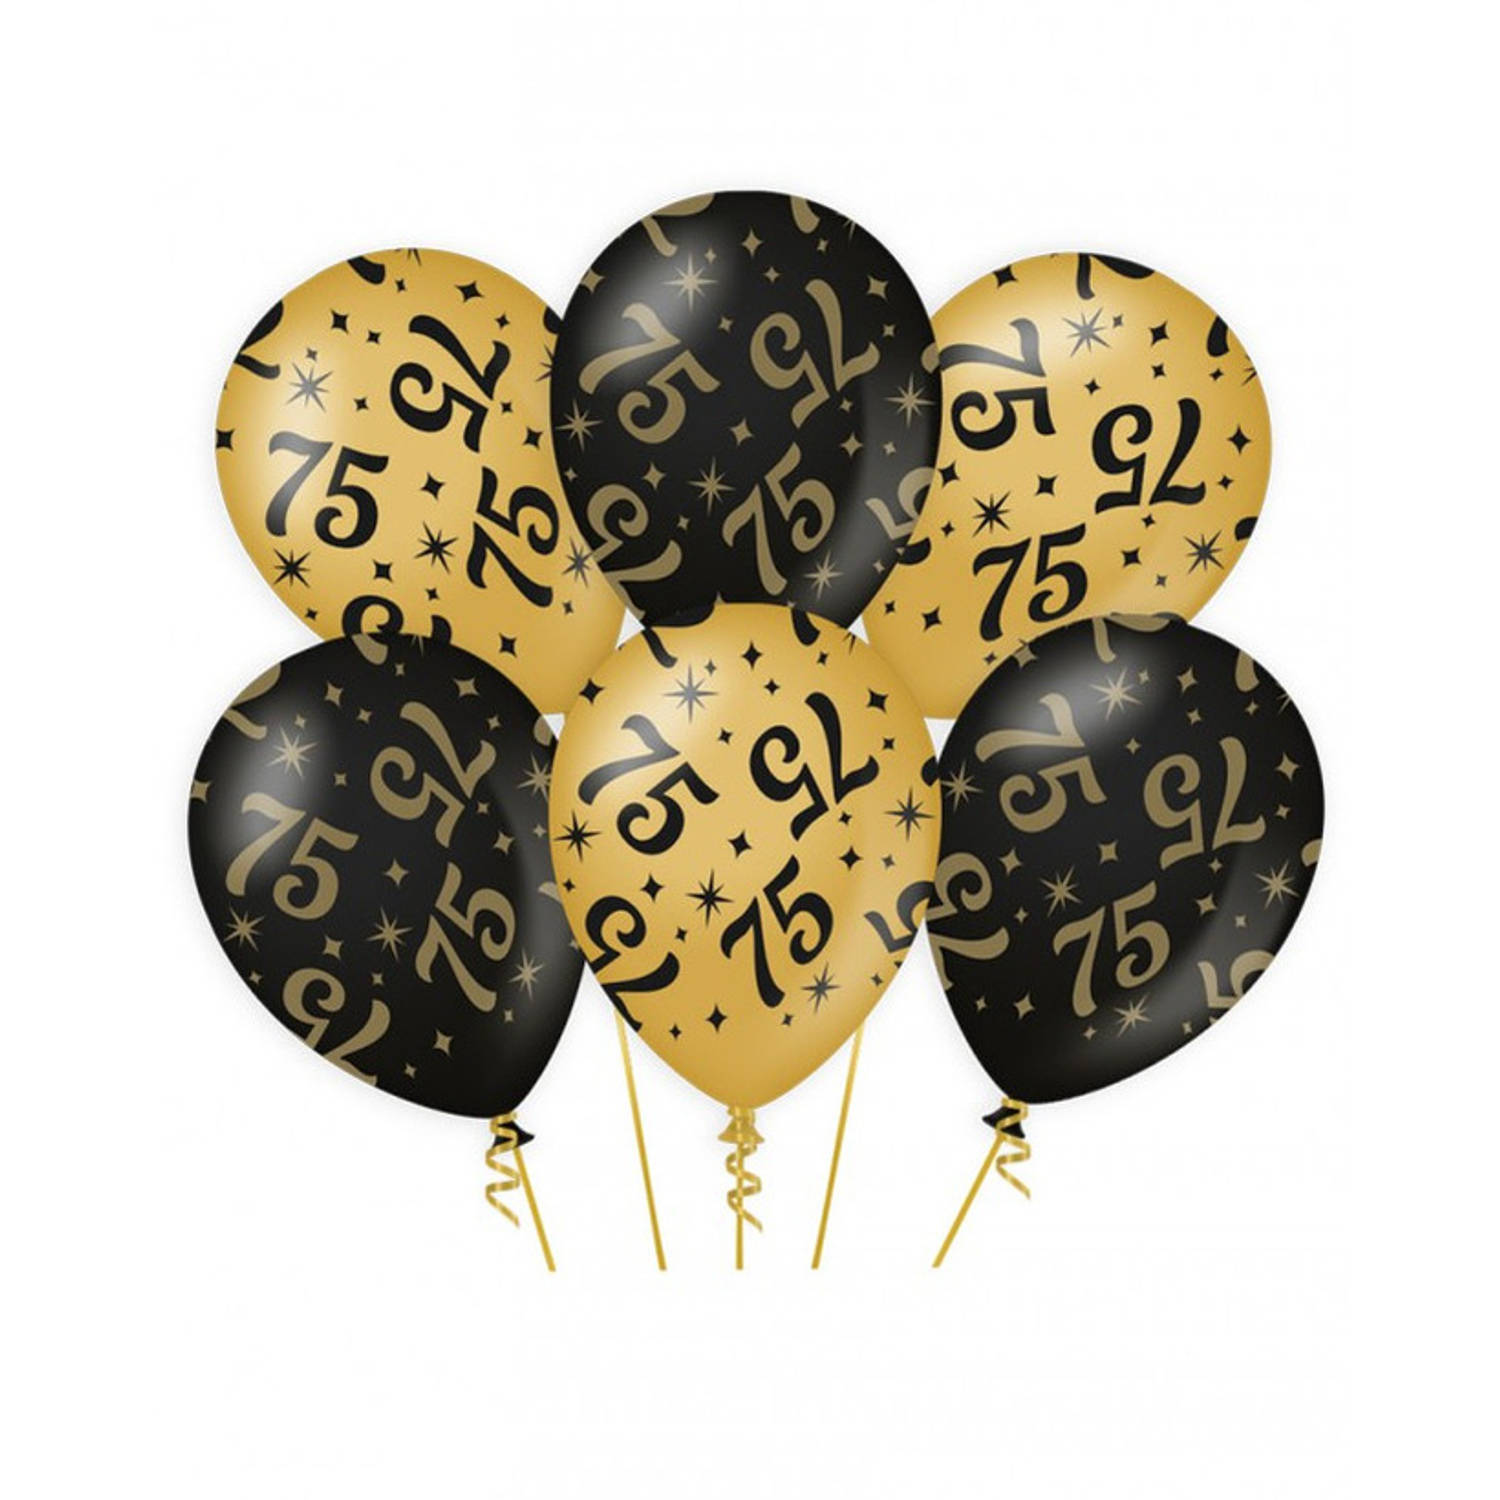 6x stuks leeftijd verjaardag feest ballonnen 75 jaar geworden zwart/goud 30 cm - Ballonnen